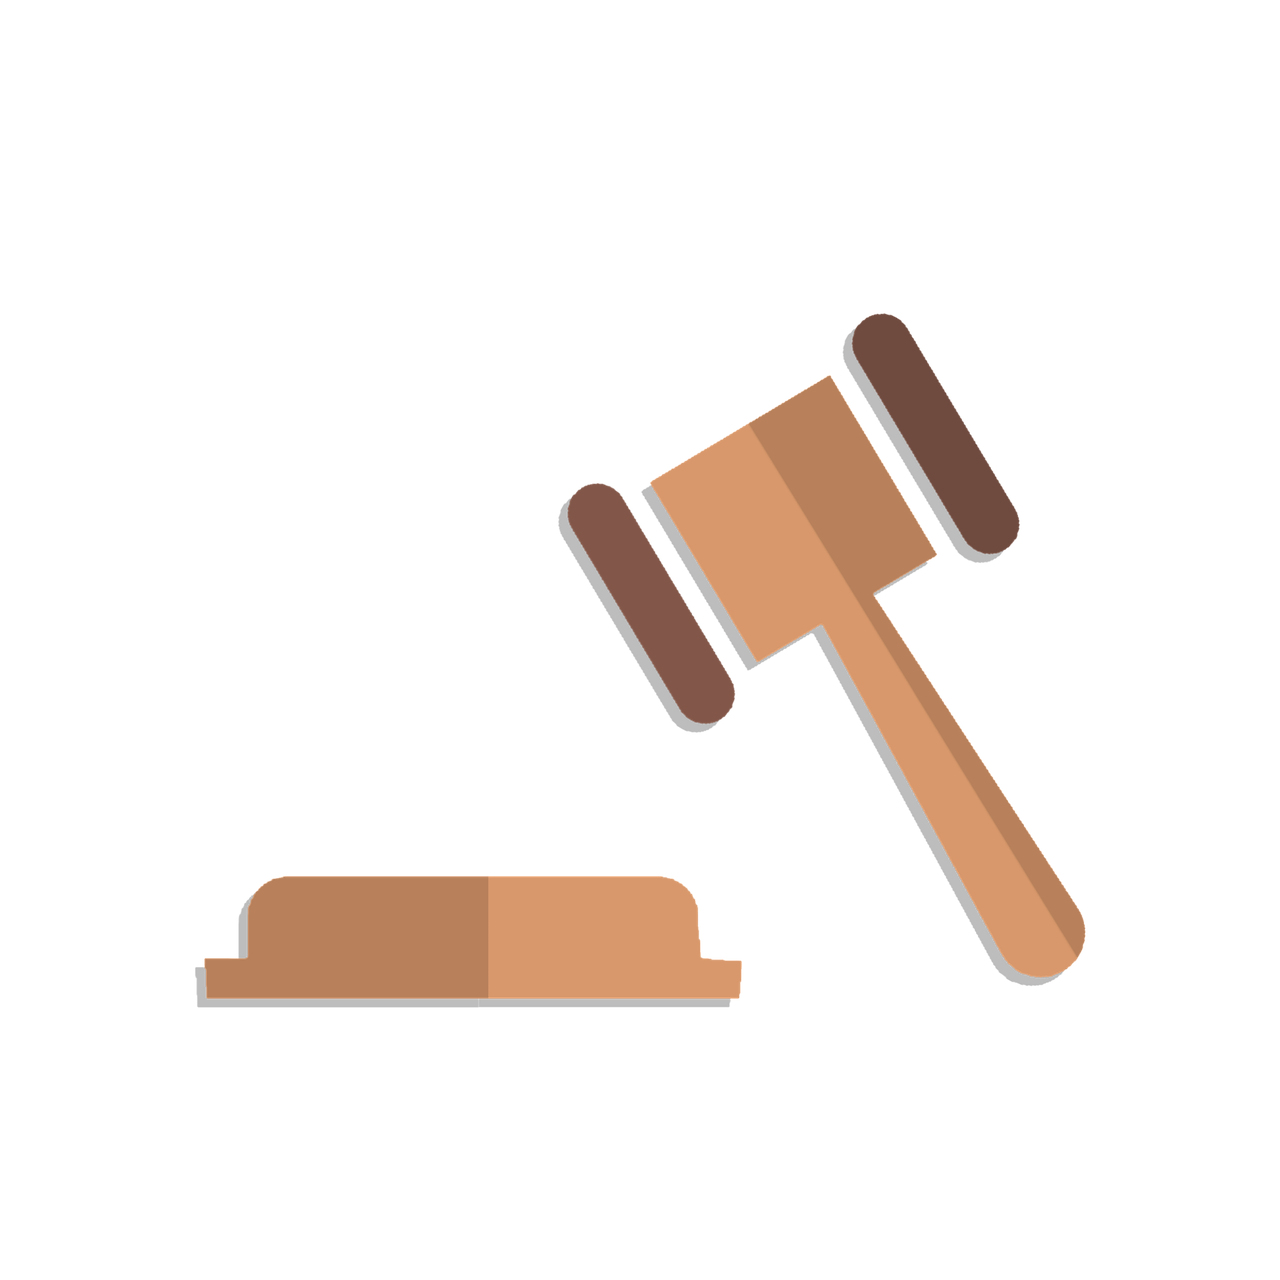 law, justice - concept, auction